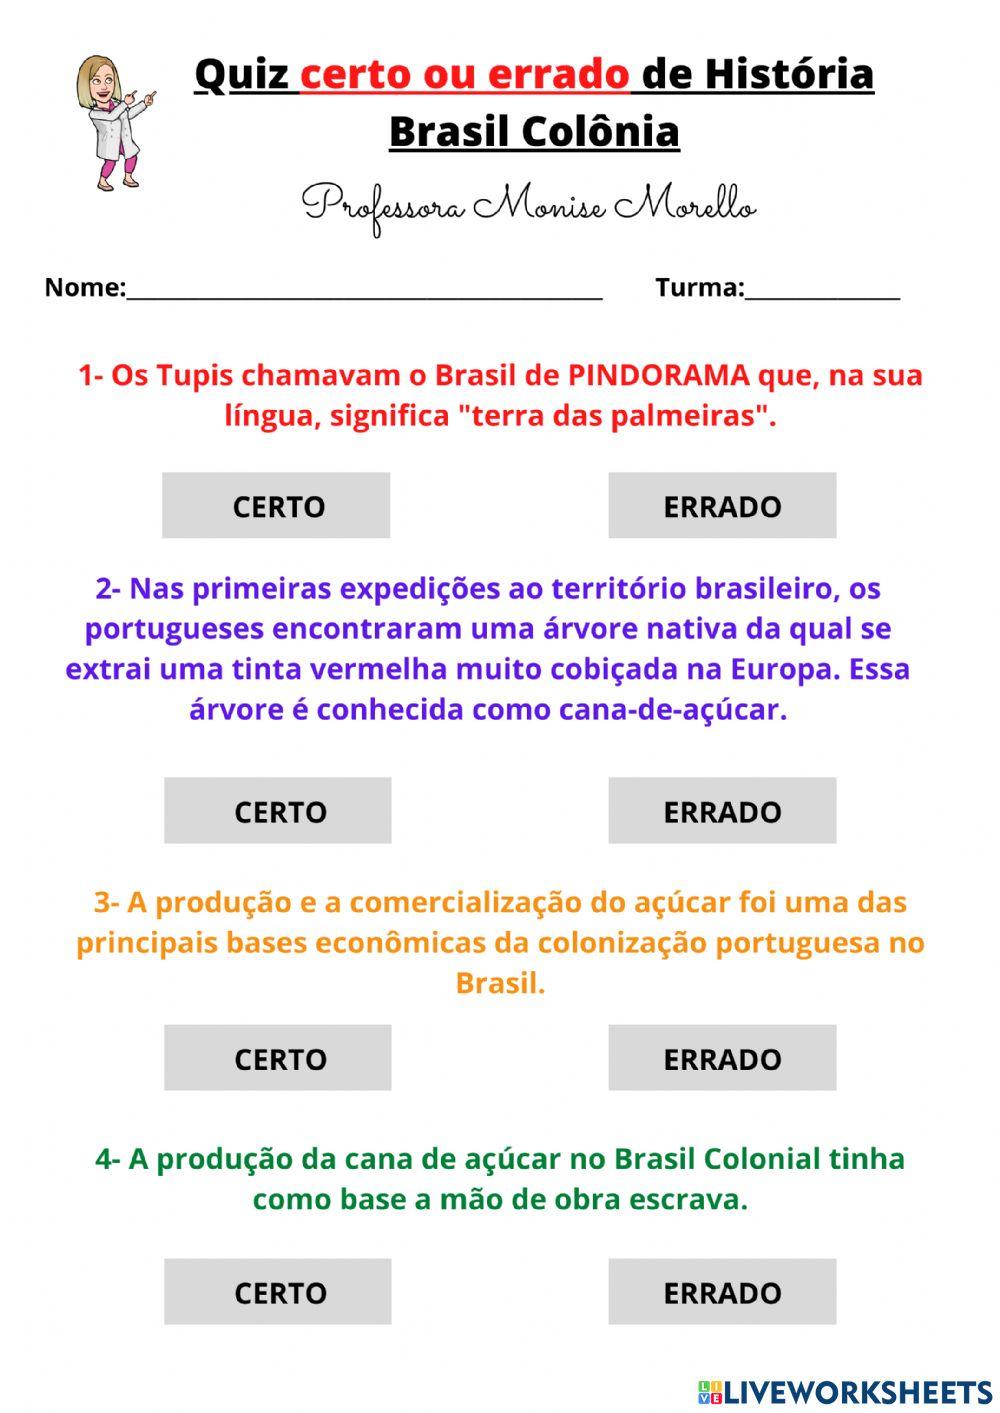 20 Perguntas de História do Brasil - QUIZ HISTÓRIA DO BRASIL #02 